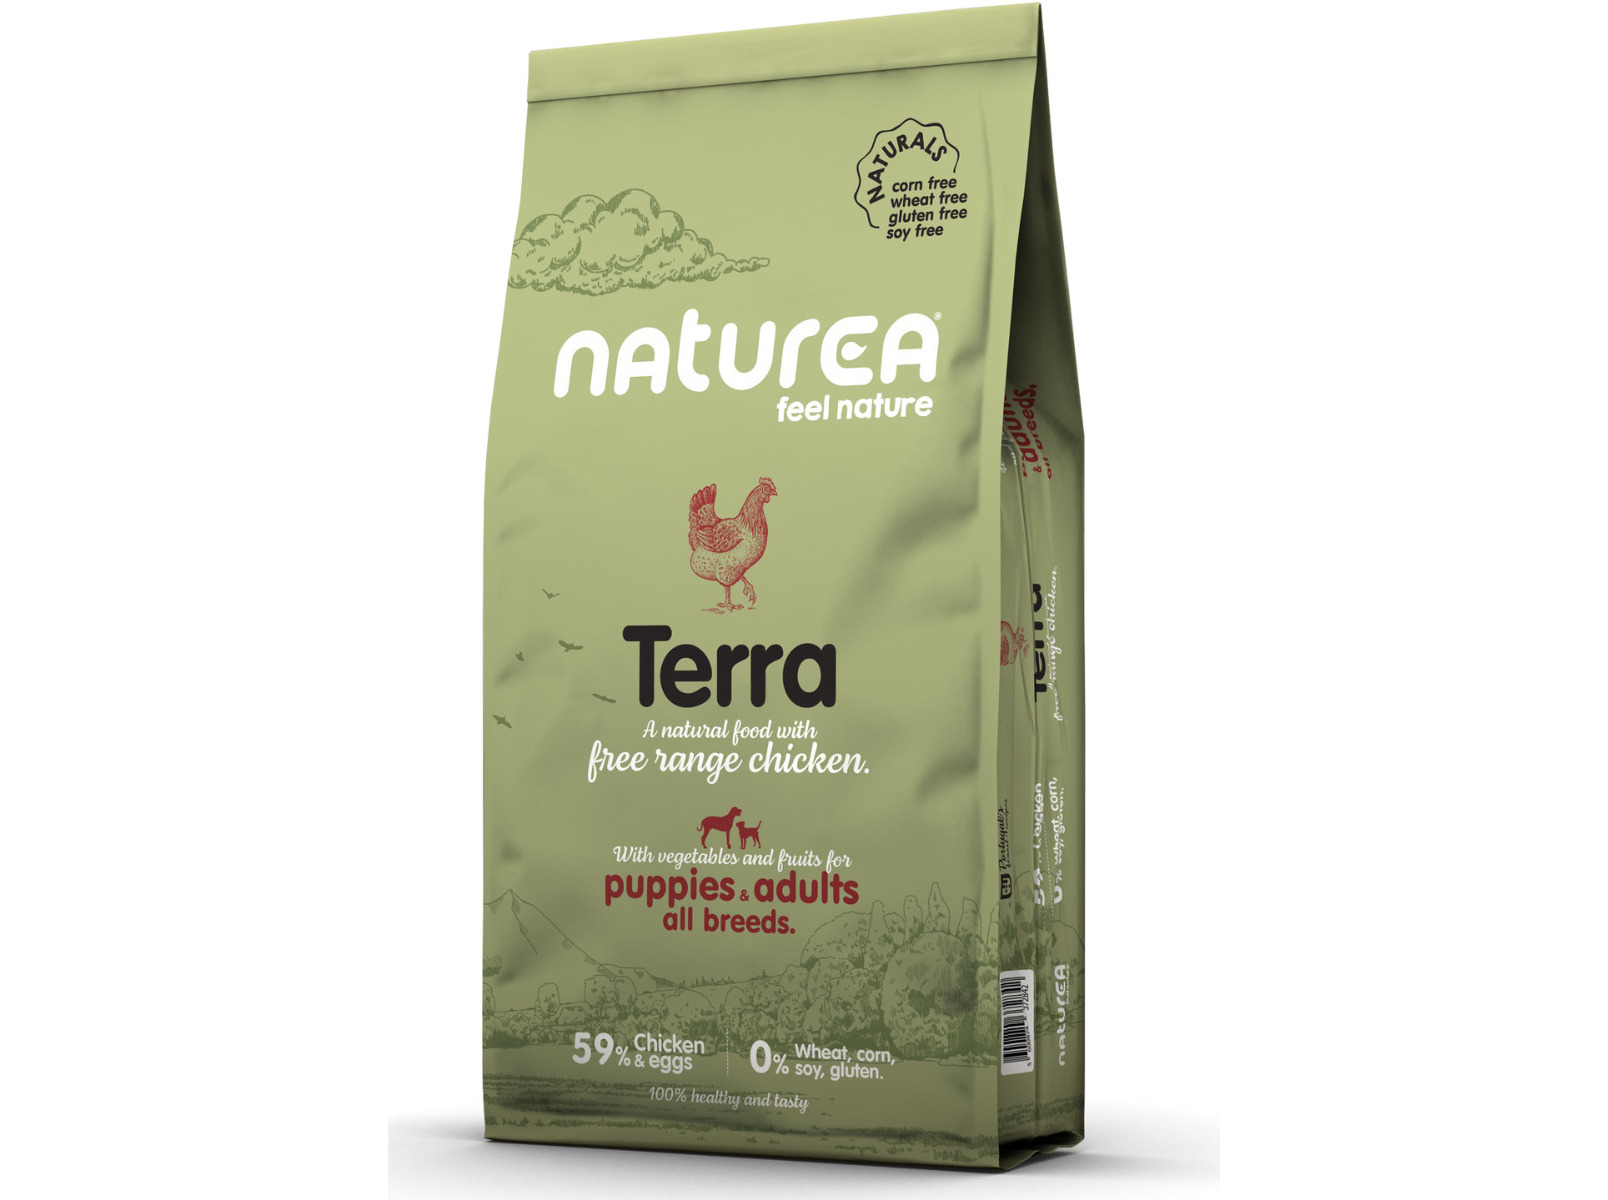 Naturals Terra Free Range Chicken, com Frango 12 KG Naturea